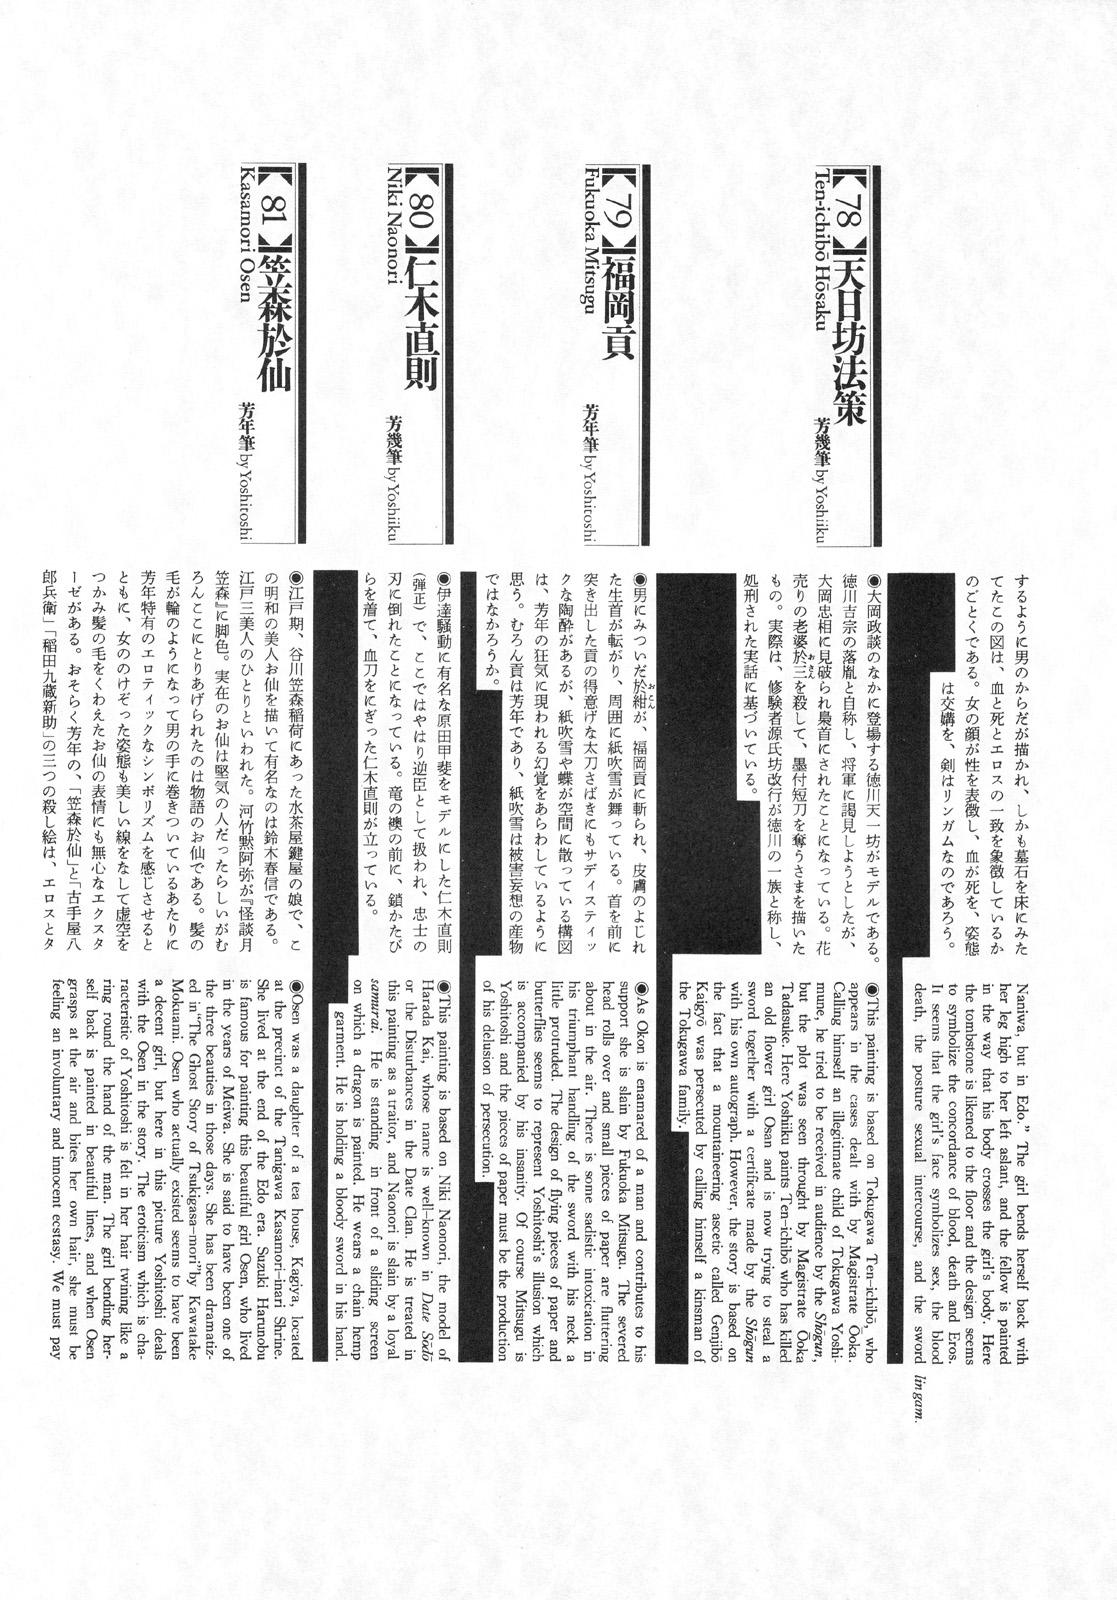 江戸昭和競作 - Bloody Ukiyo-e in 1866 & 1988 100